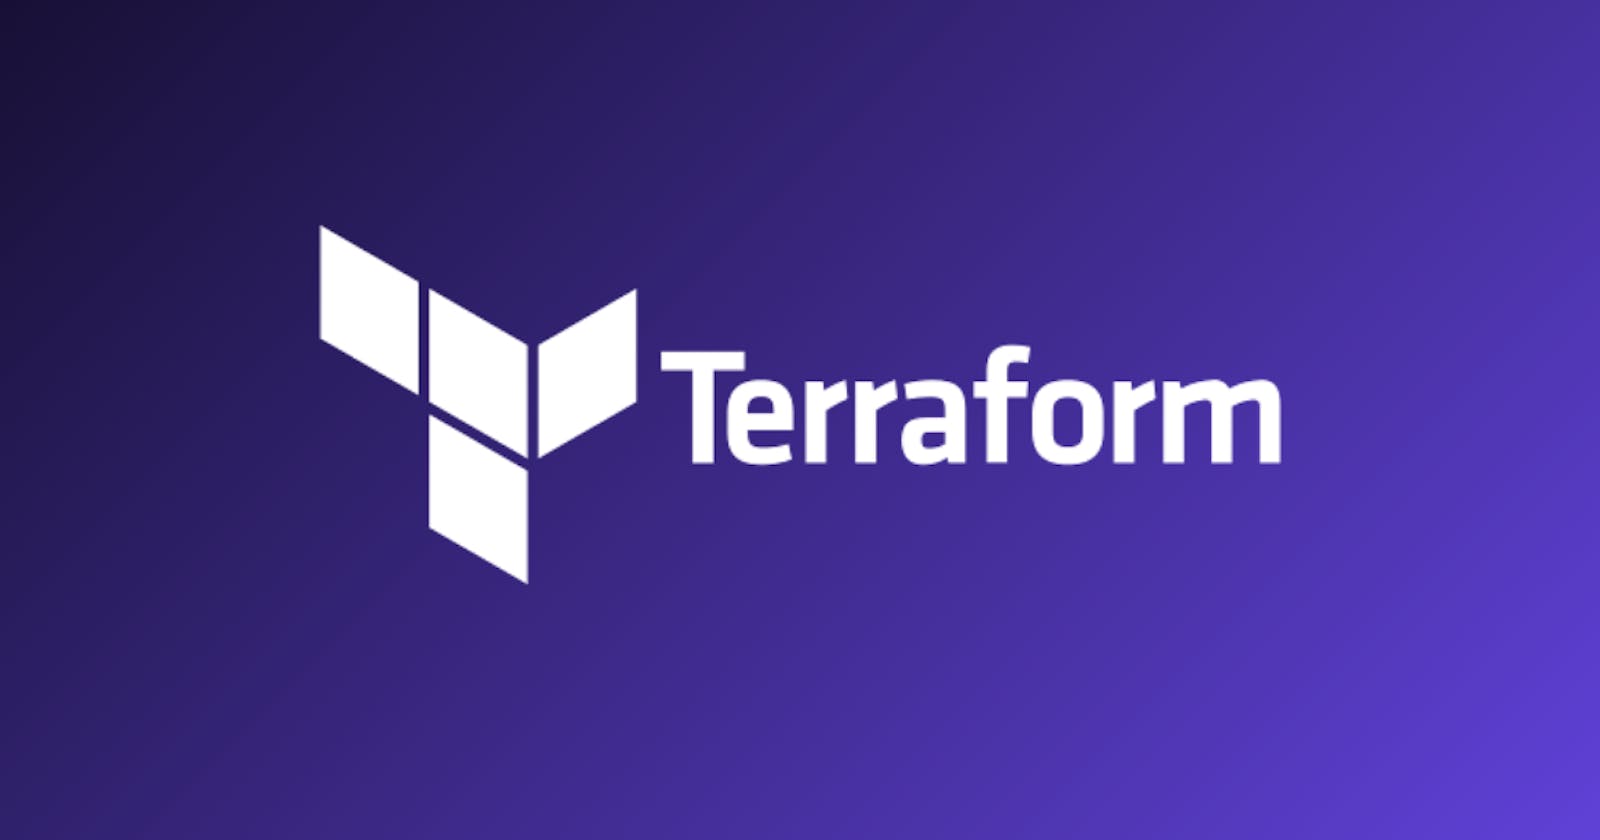 Terraform Introduction: What is Terraform? - Part 1